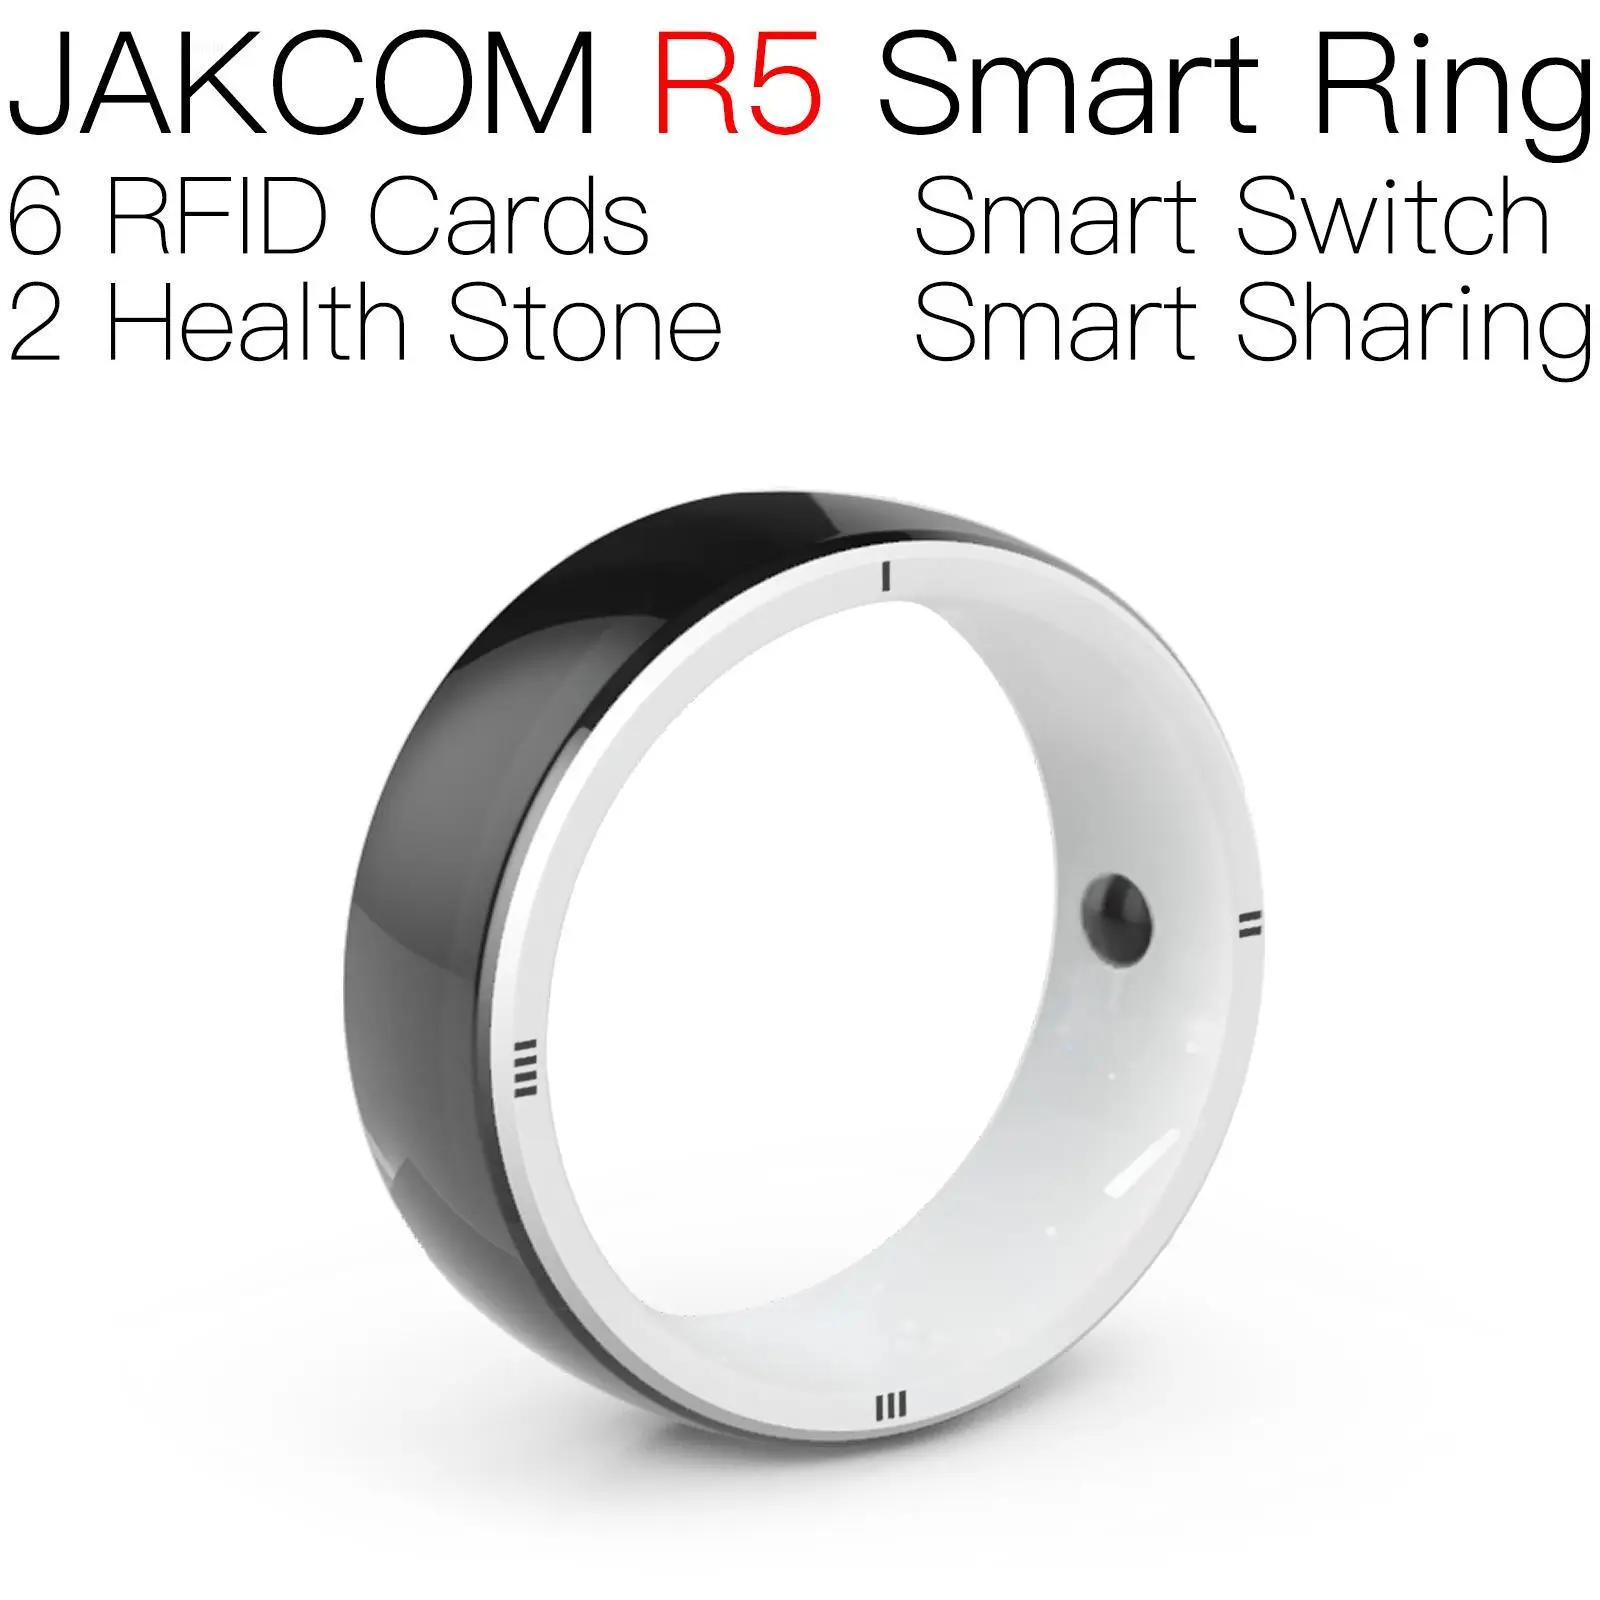 

JAKCOM R5 Smart Ring better than body alien rfid identifier animal wrap ring 125khz 10pcs pooper scoop dog stainless tag chip